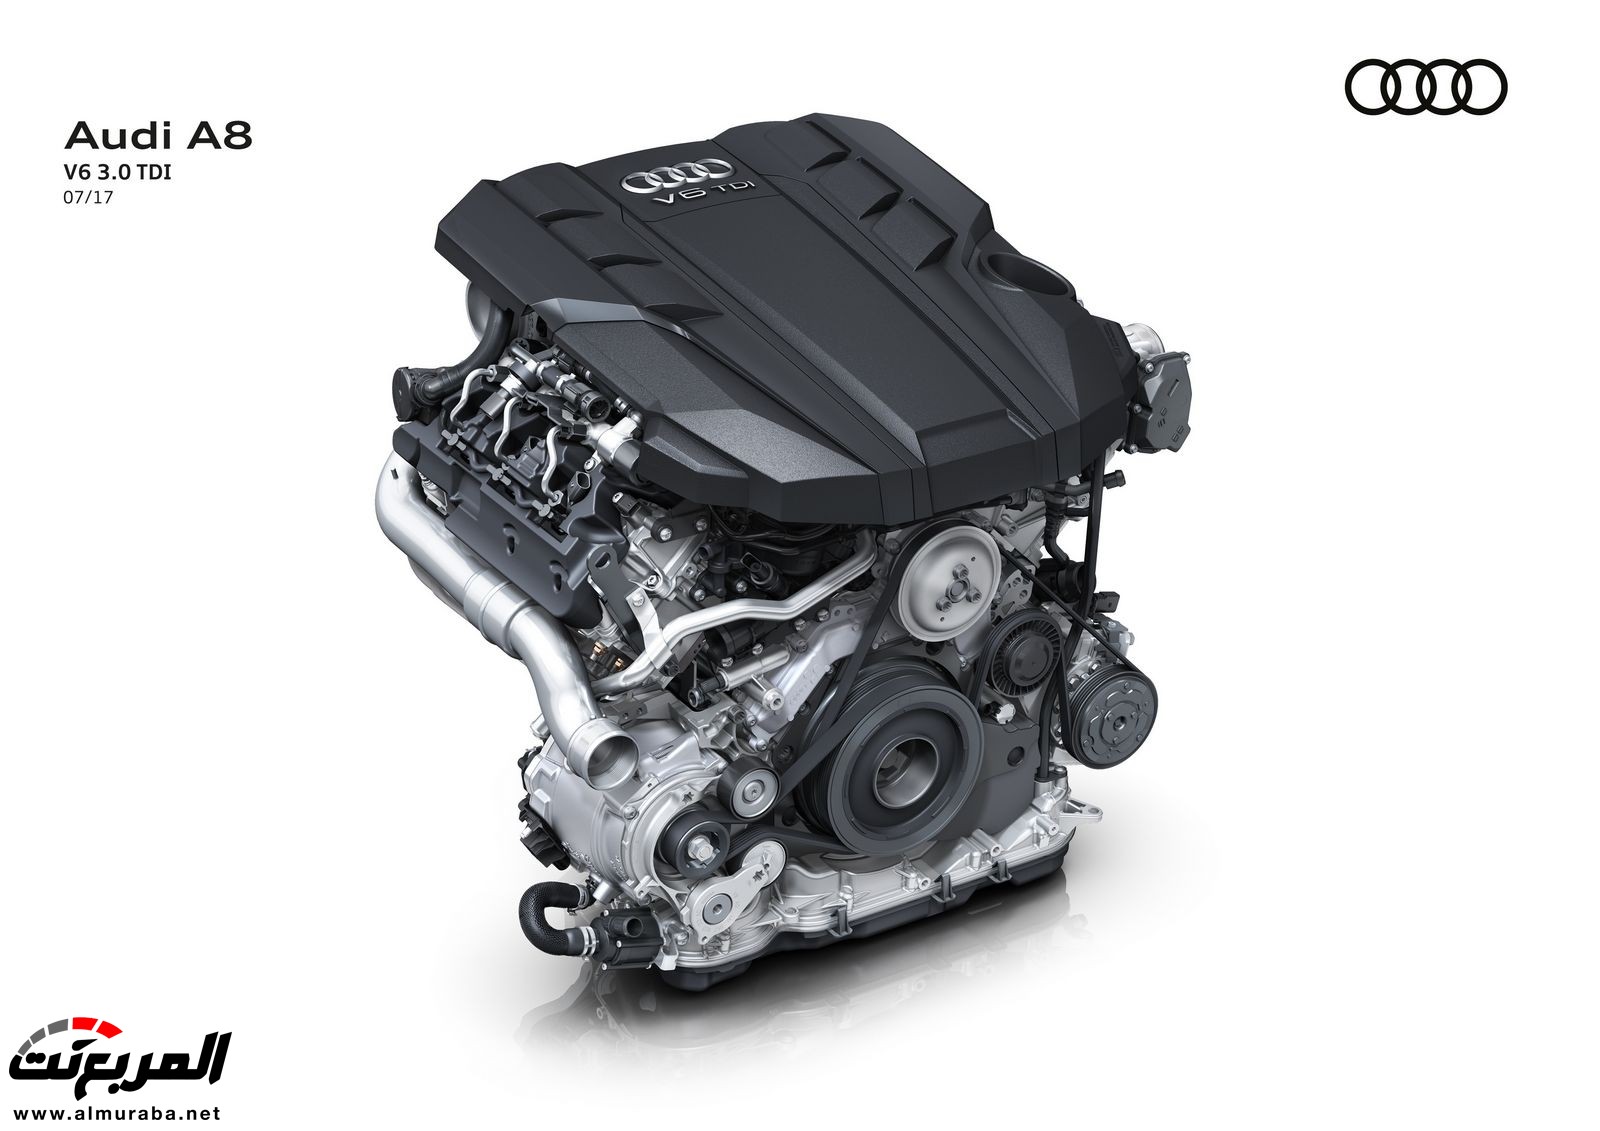 أودي A8 2018 الجديدة كلياً تكشف نفسها بتصميم وتقنيات متطورة "معلومات + 100 صورة" Audi A8 73